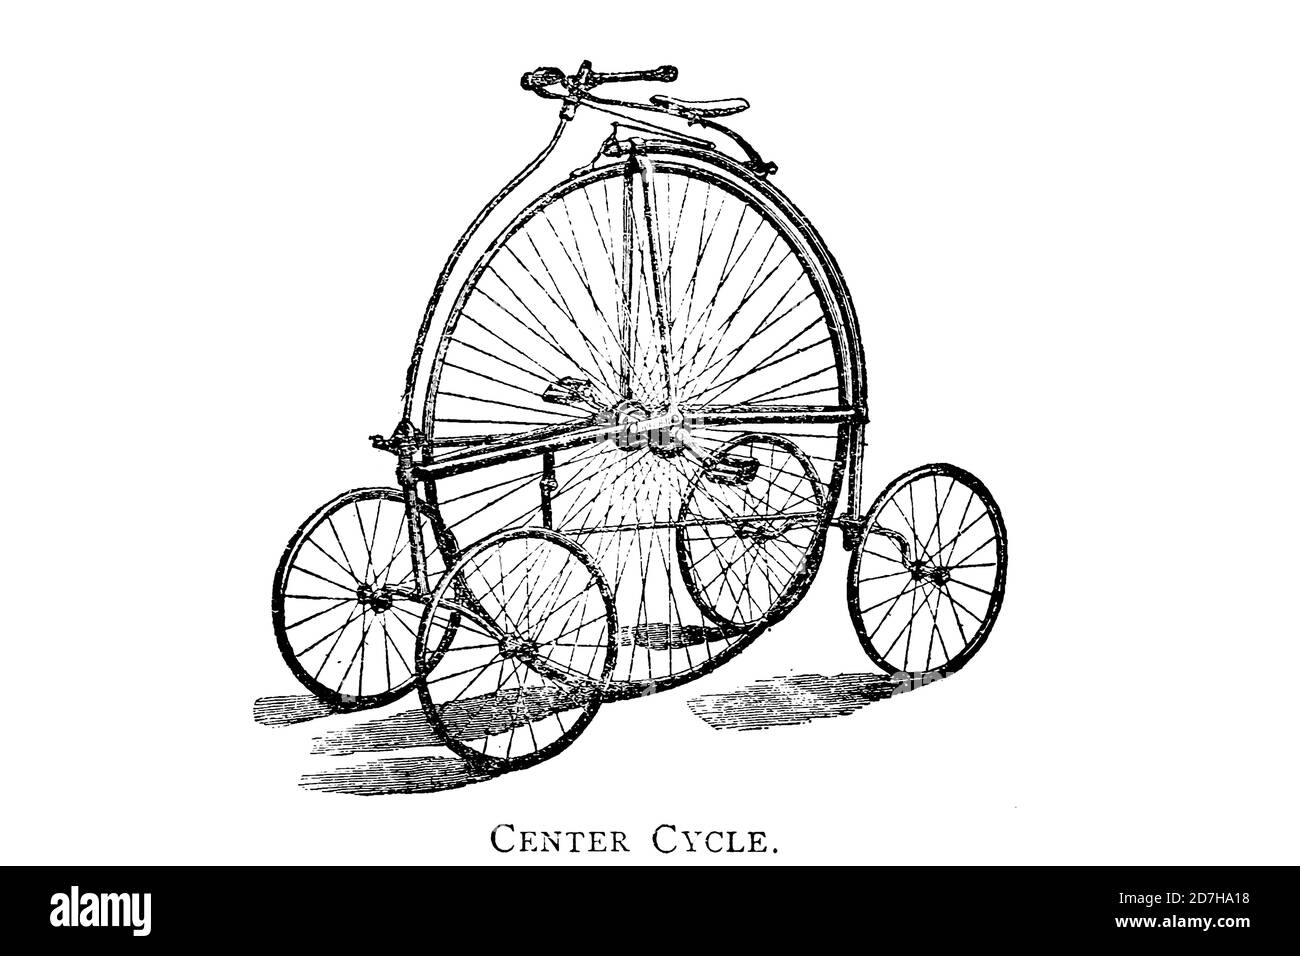 Center Cycle High wheel Fahrrad mit vier unterstützenden "Training" Räder von Wheels und Wheeling; ein unverzichtbares Handbuch für Radfahrer, mit über zwei Stockfoto